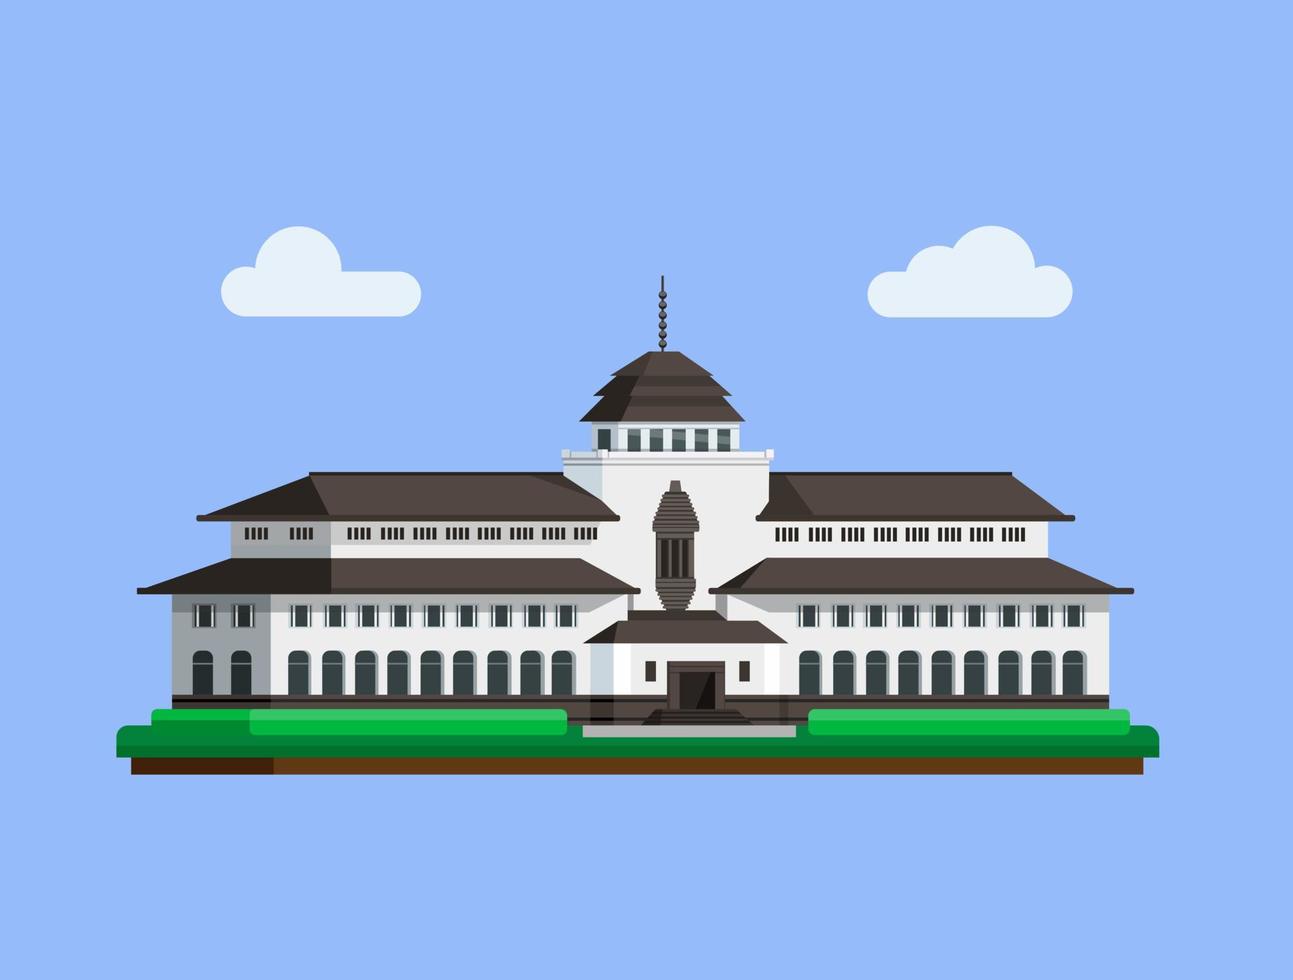 gedung sate est un bâtiment célèbre du concept de bandung west java indonésie dans un vecteur d'illustration plat